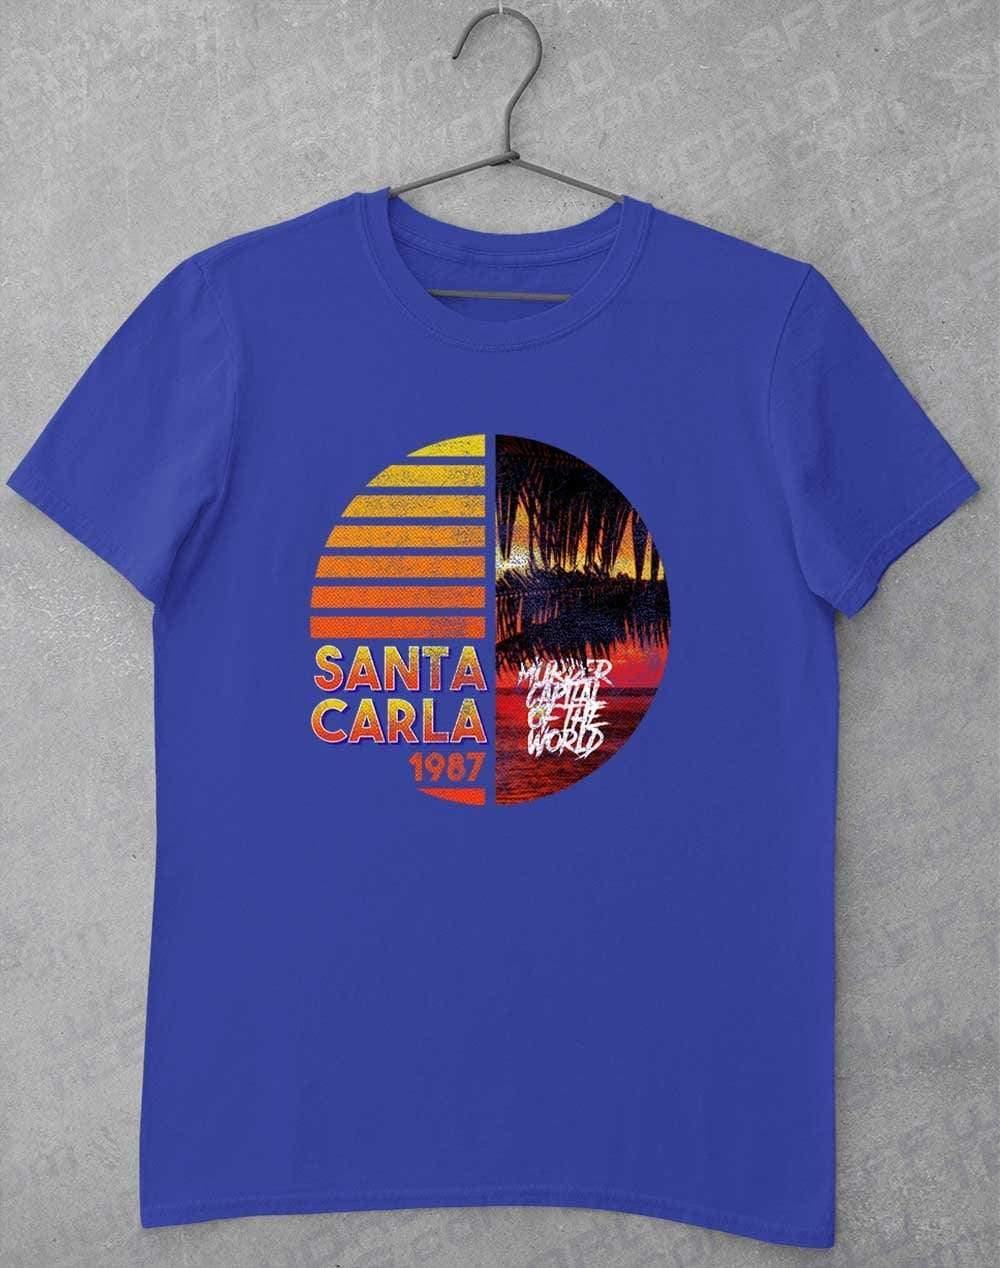 Santa Carla 1987 - T-Shirt S / Royal  - Off World Tees